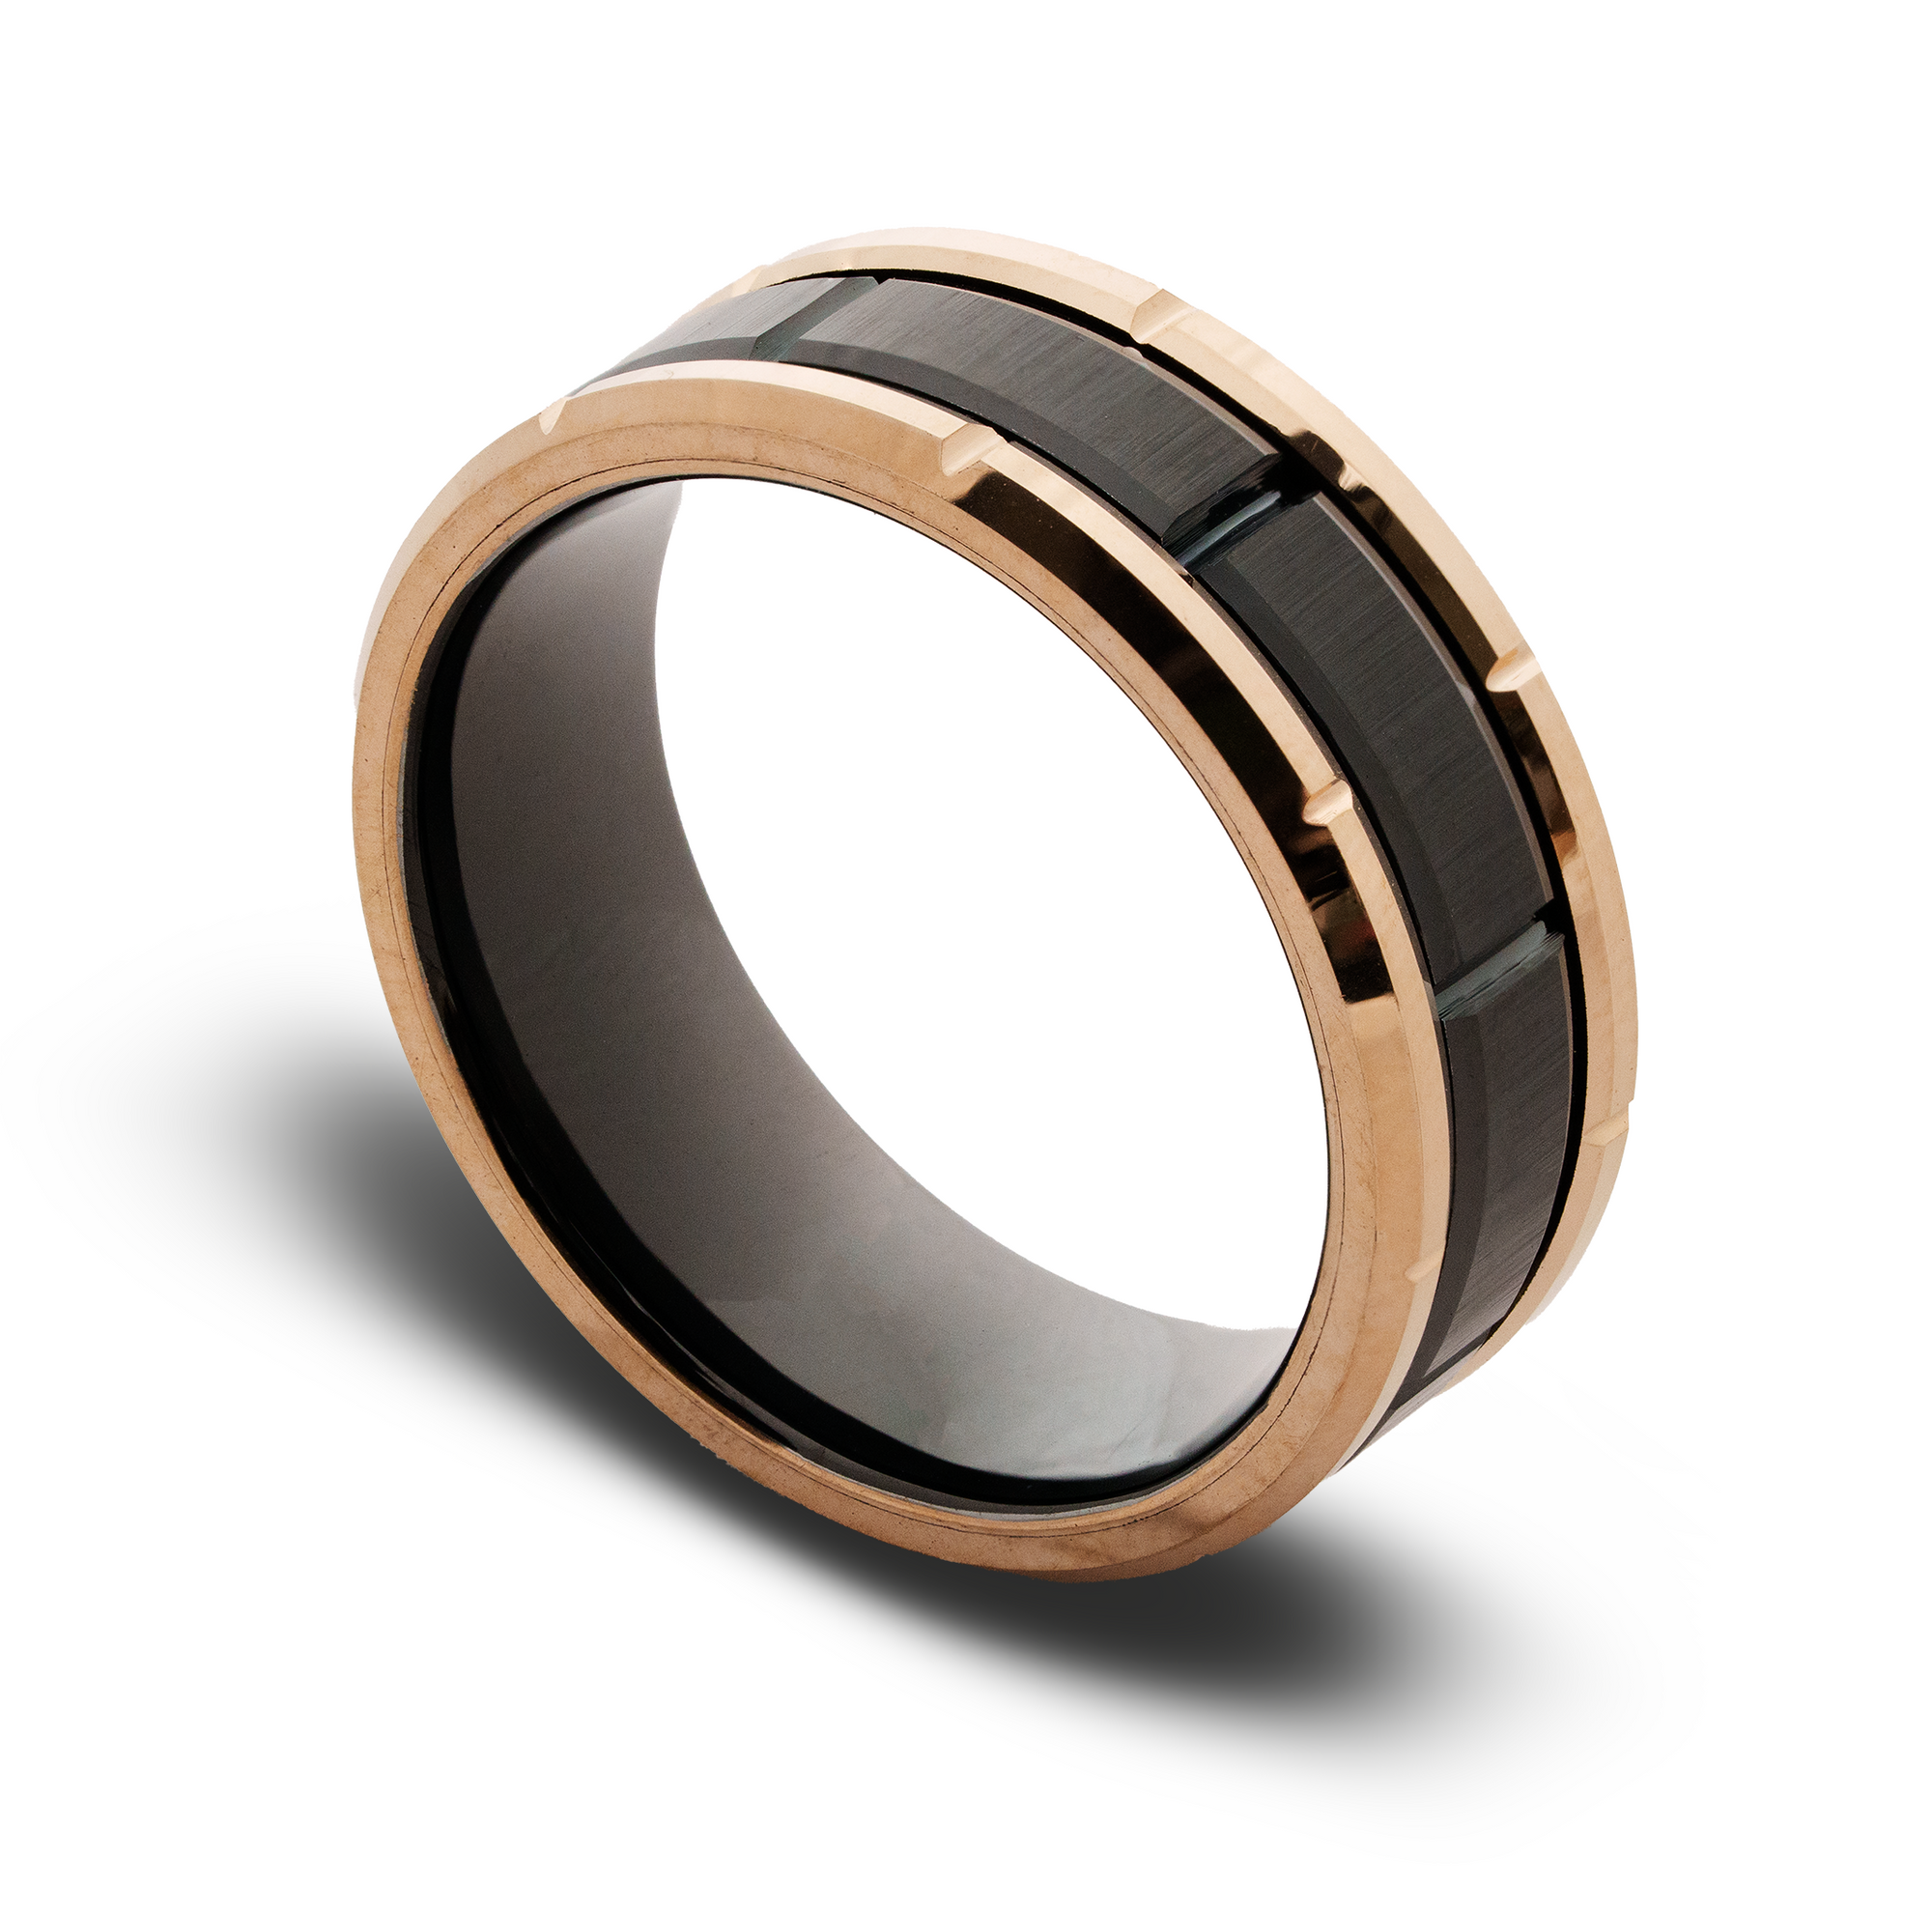 The “Duke” Ring